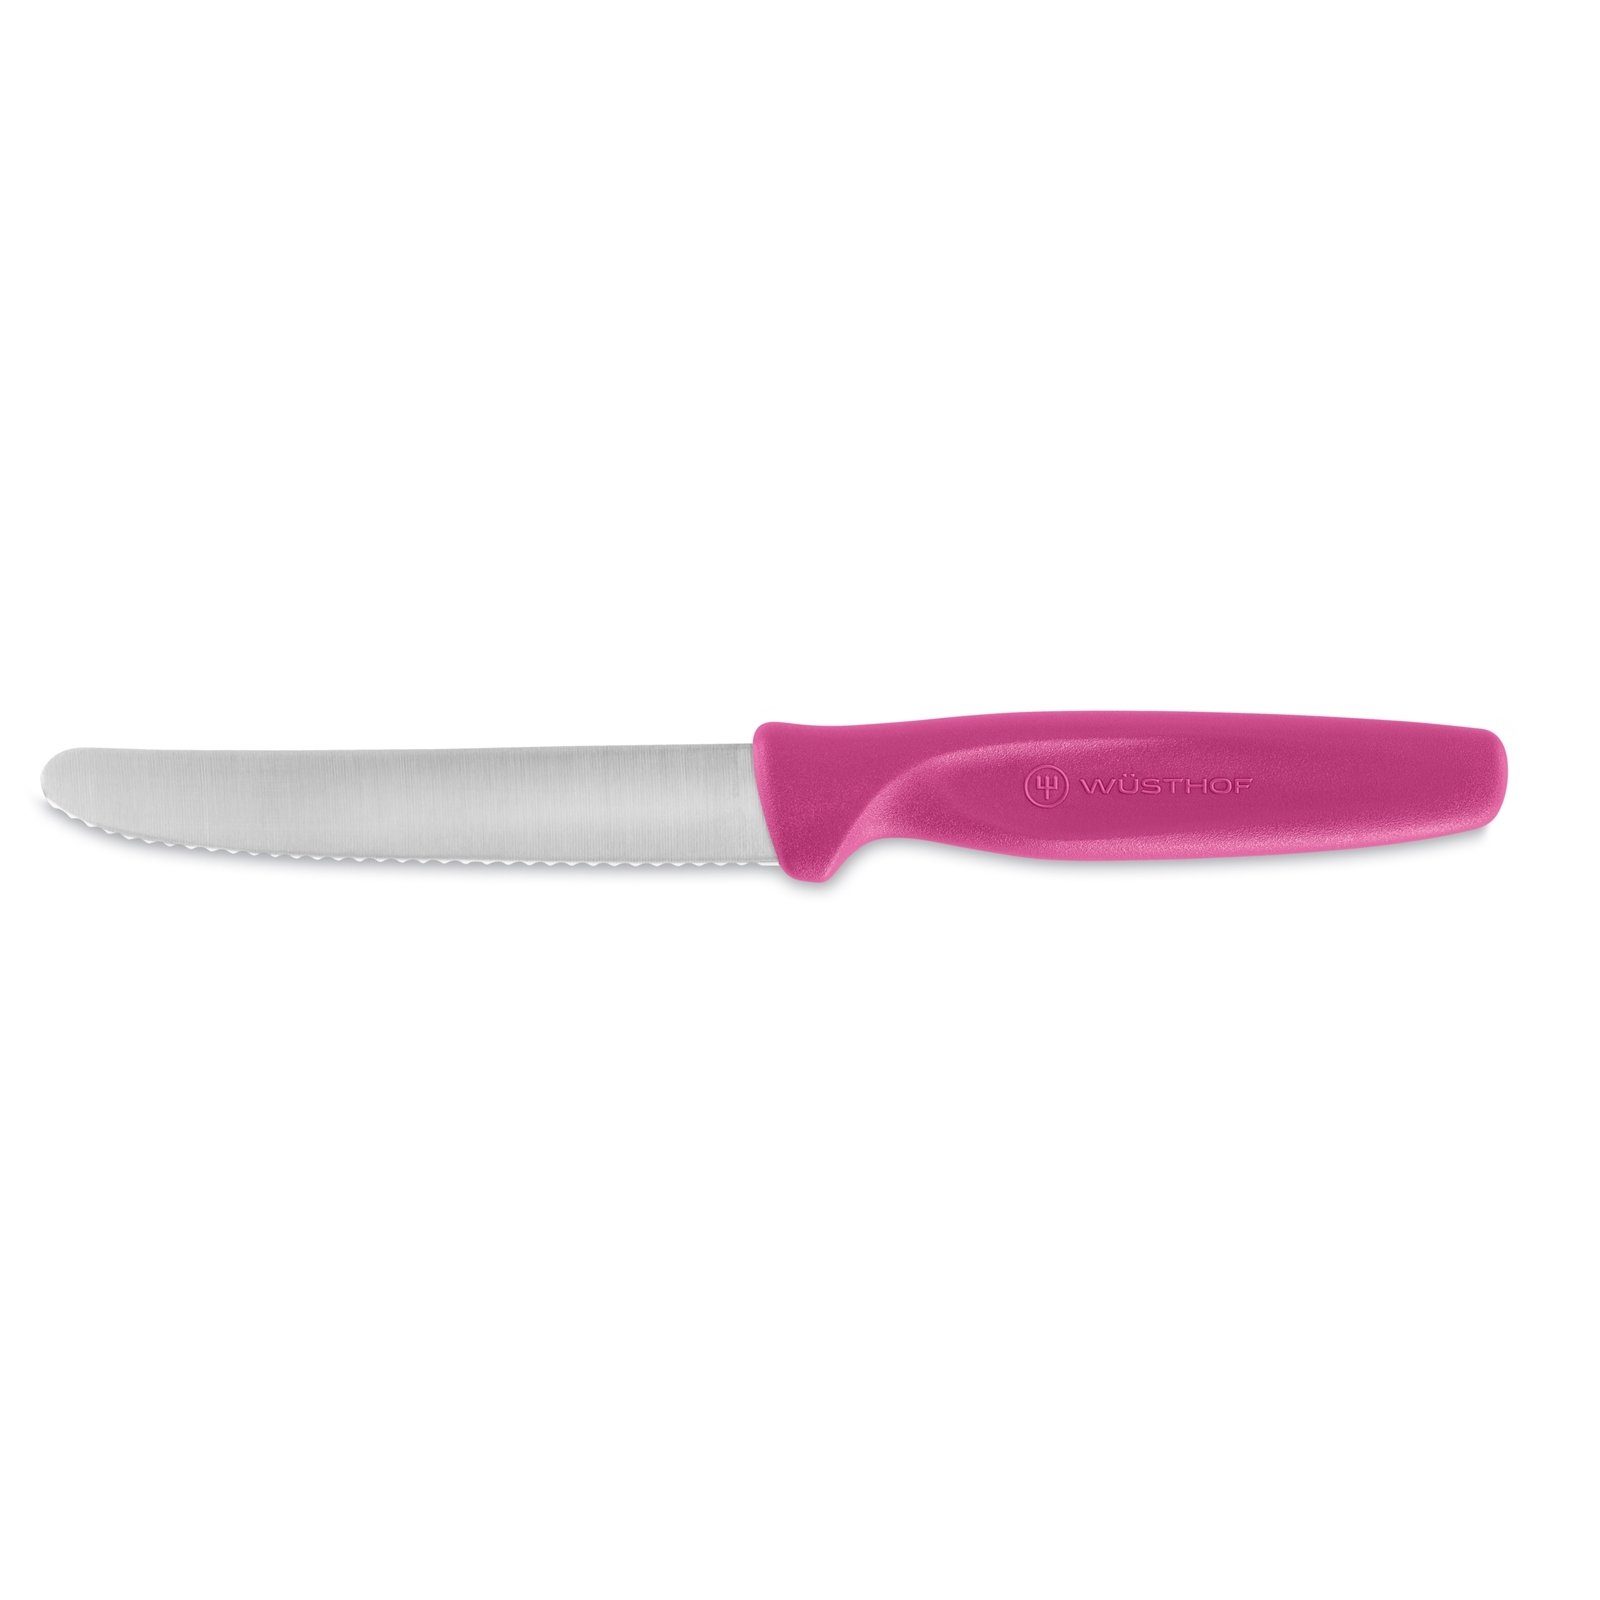 WÜSTHOF Allzweckmesser Universalmesser 10 cm Pink